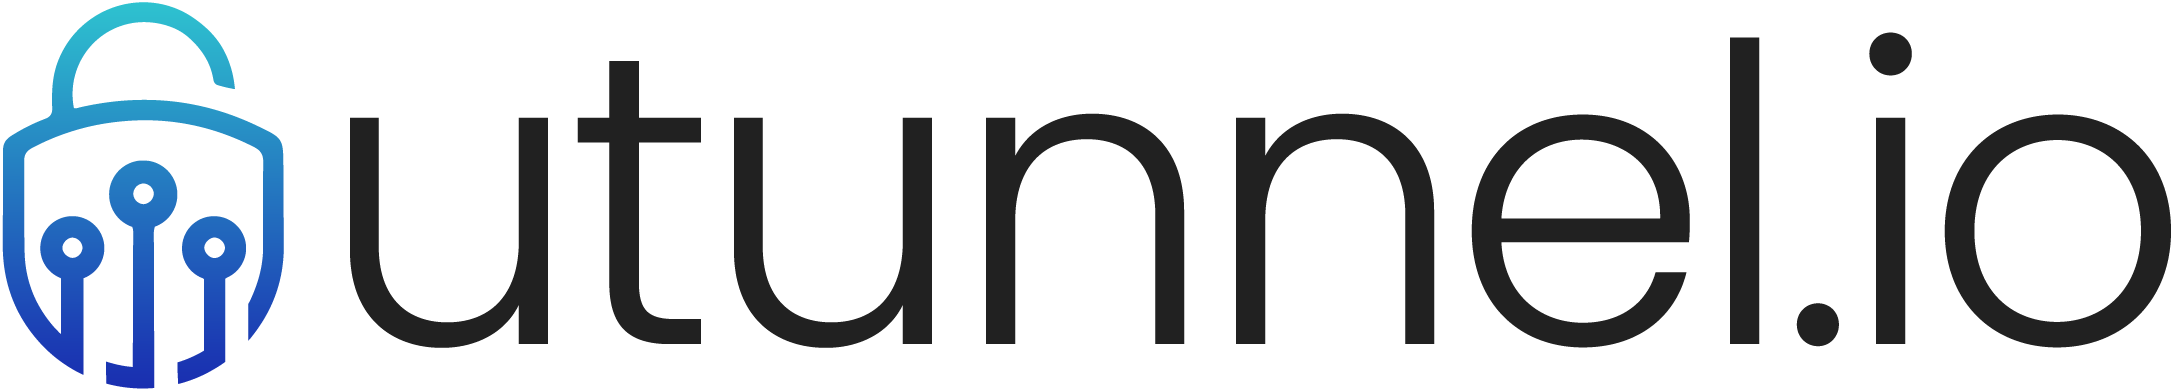 UTunnel logo